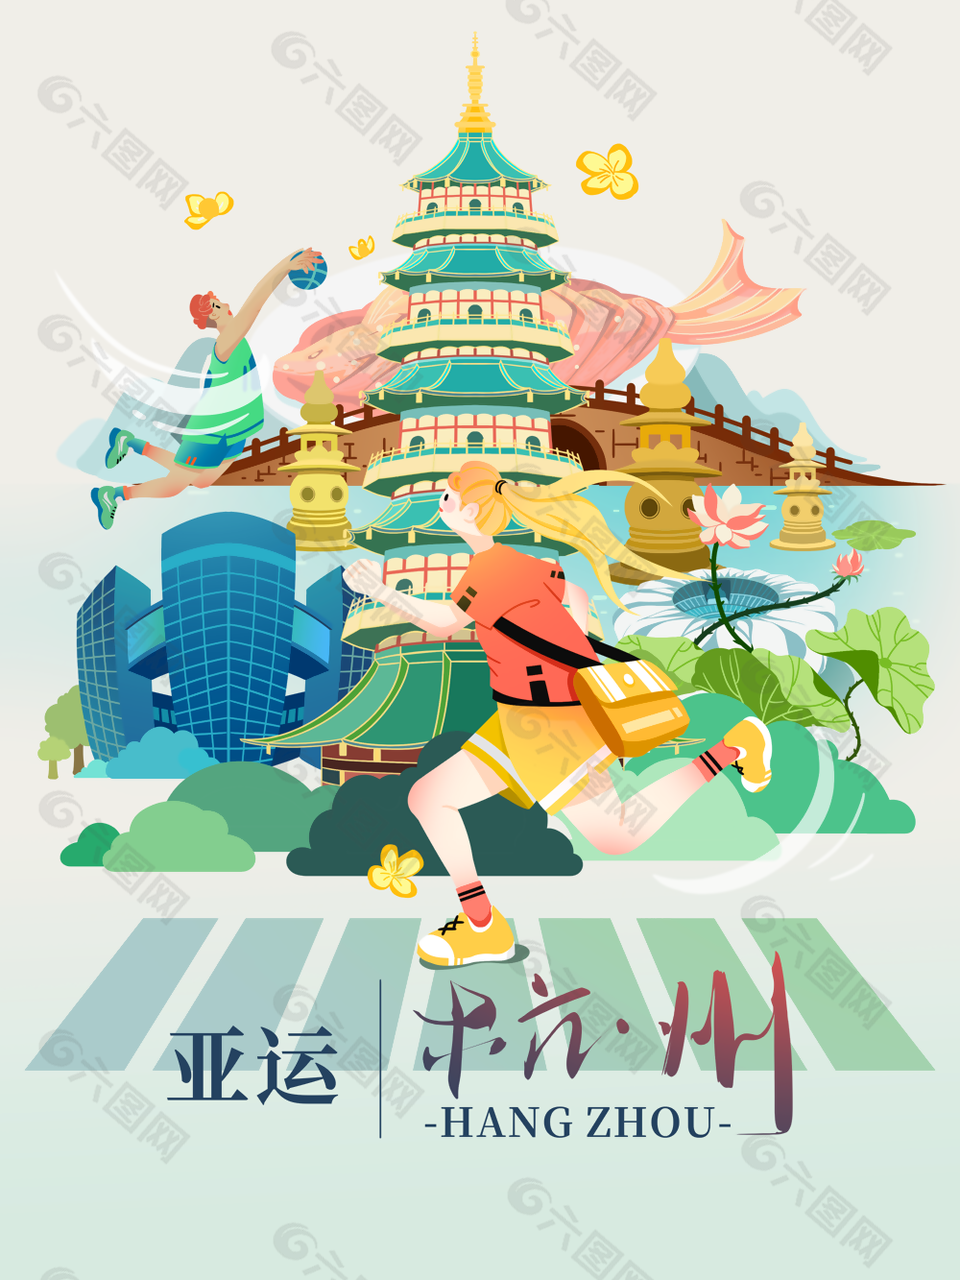 创意清新手绘插画风杭州亚运会海报图设计